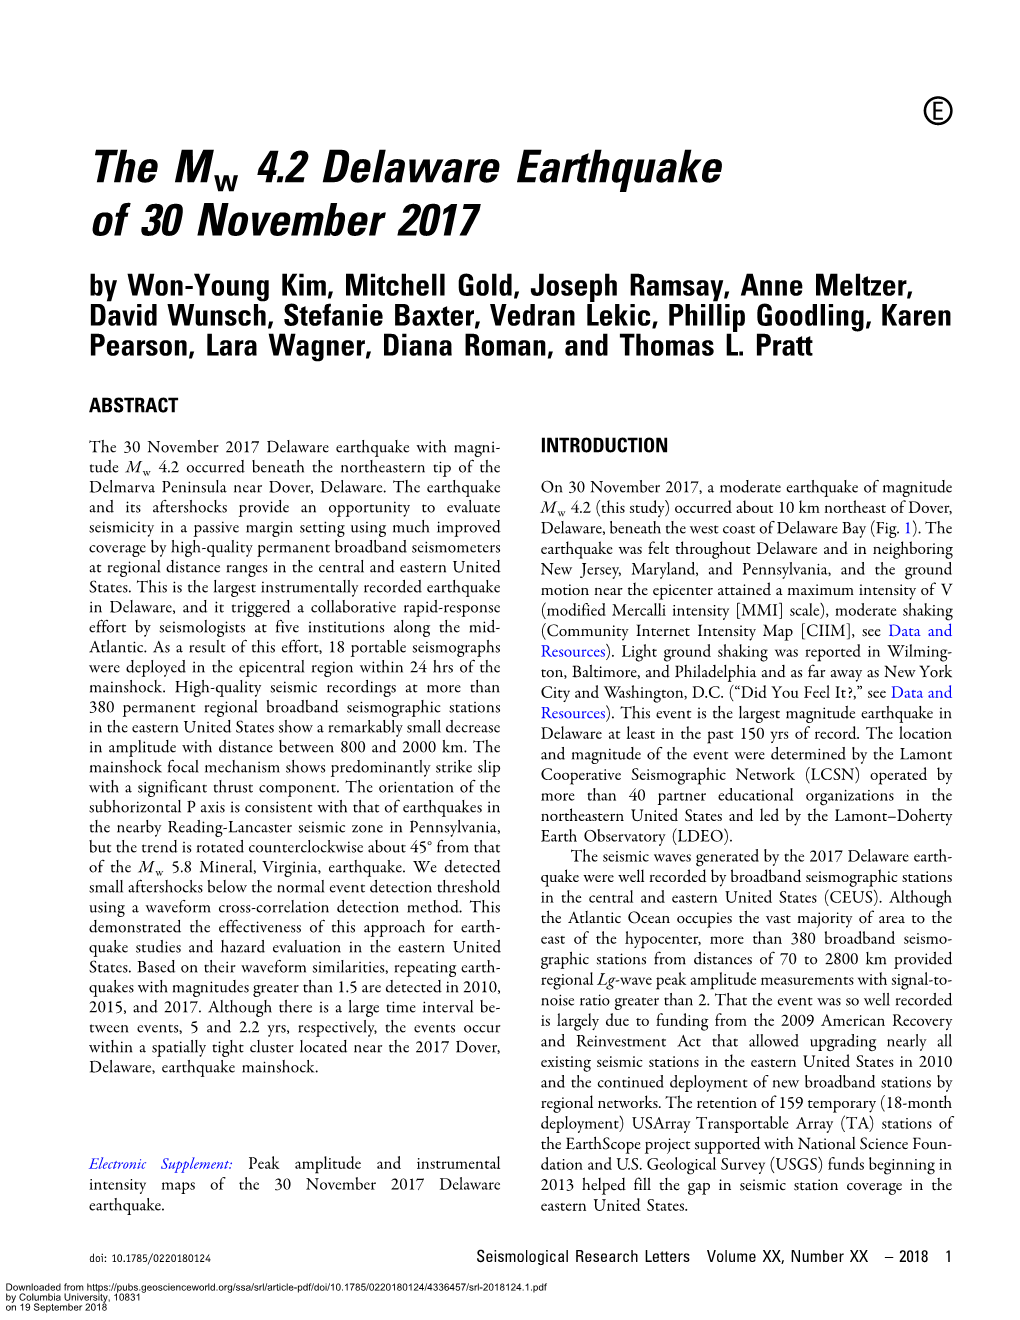 The Mw 4.2 Delaware Earthquake of 30 November 2017